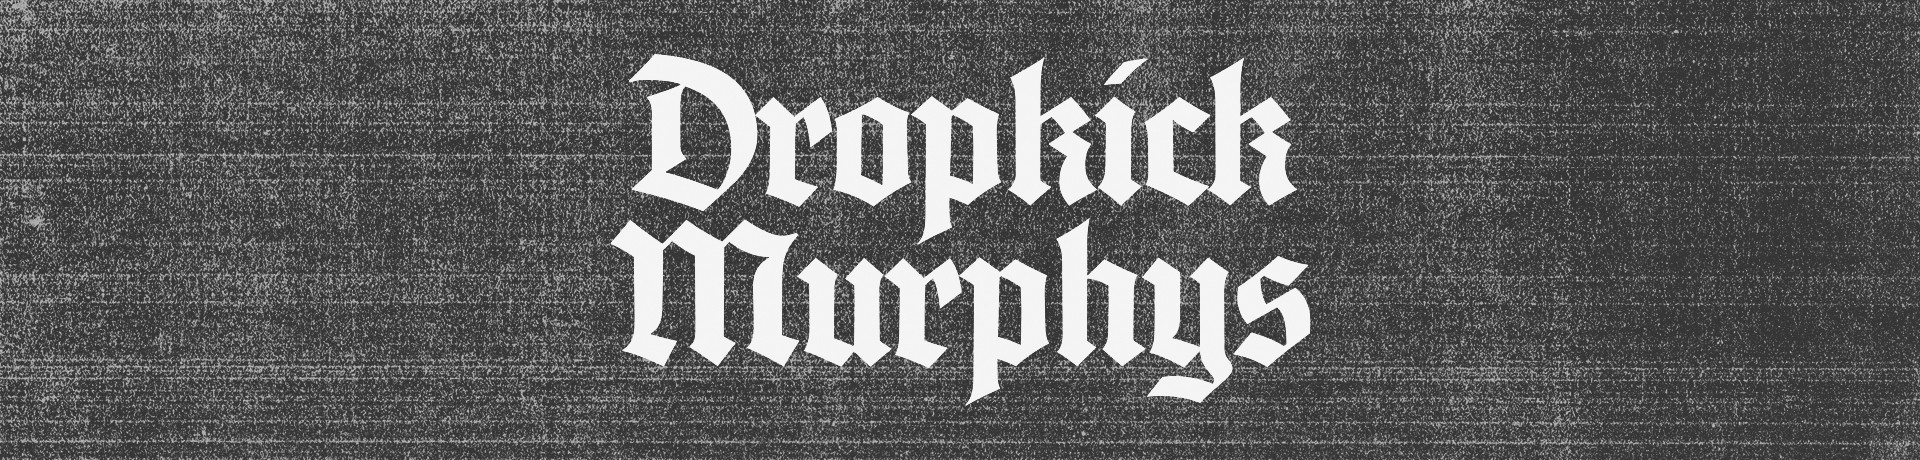 Dropkick Murphys - Not Here to Mess Around